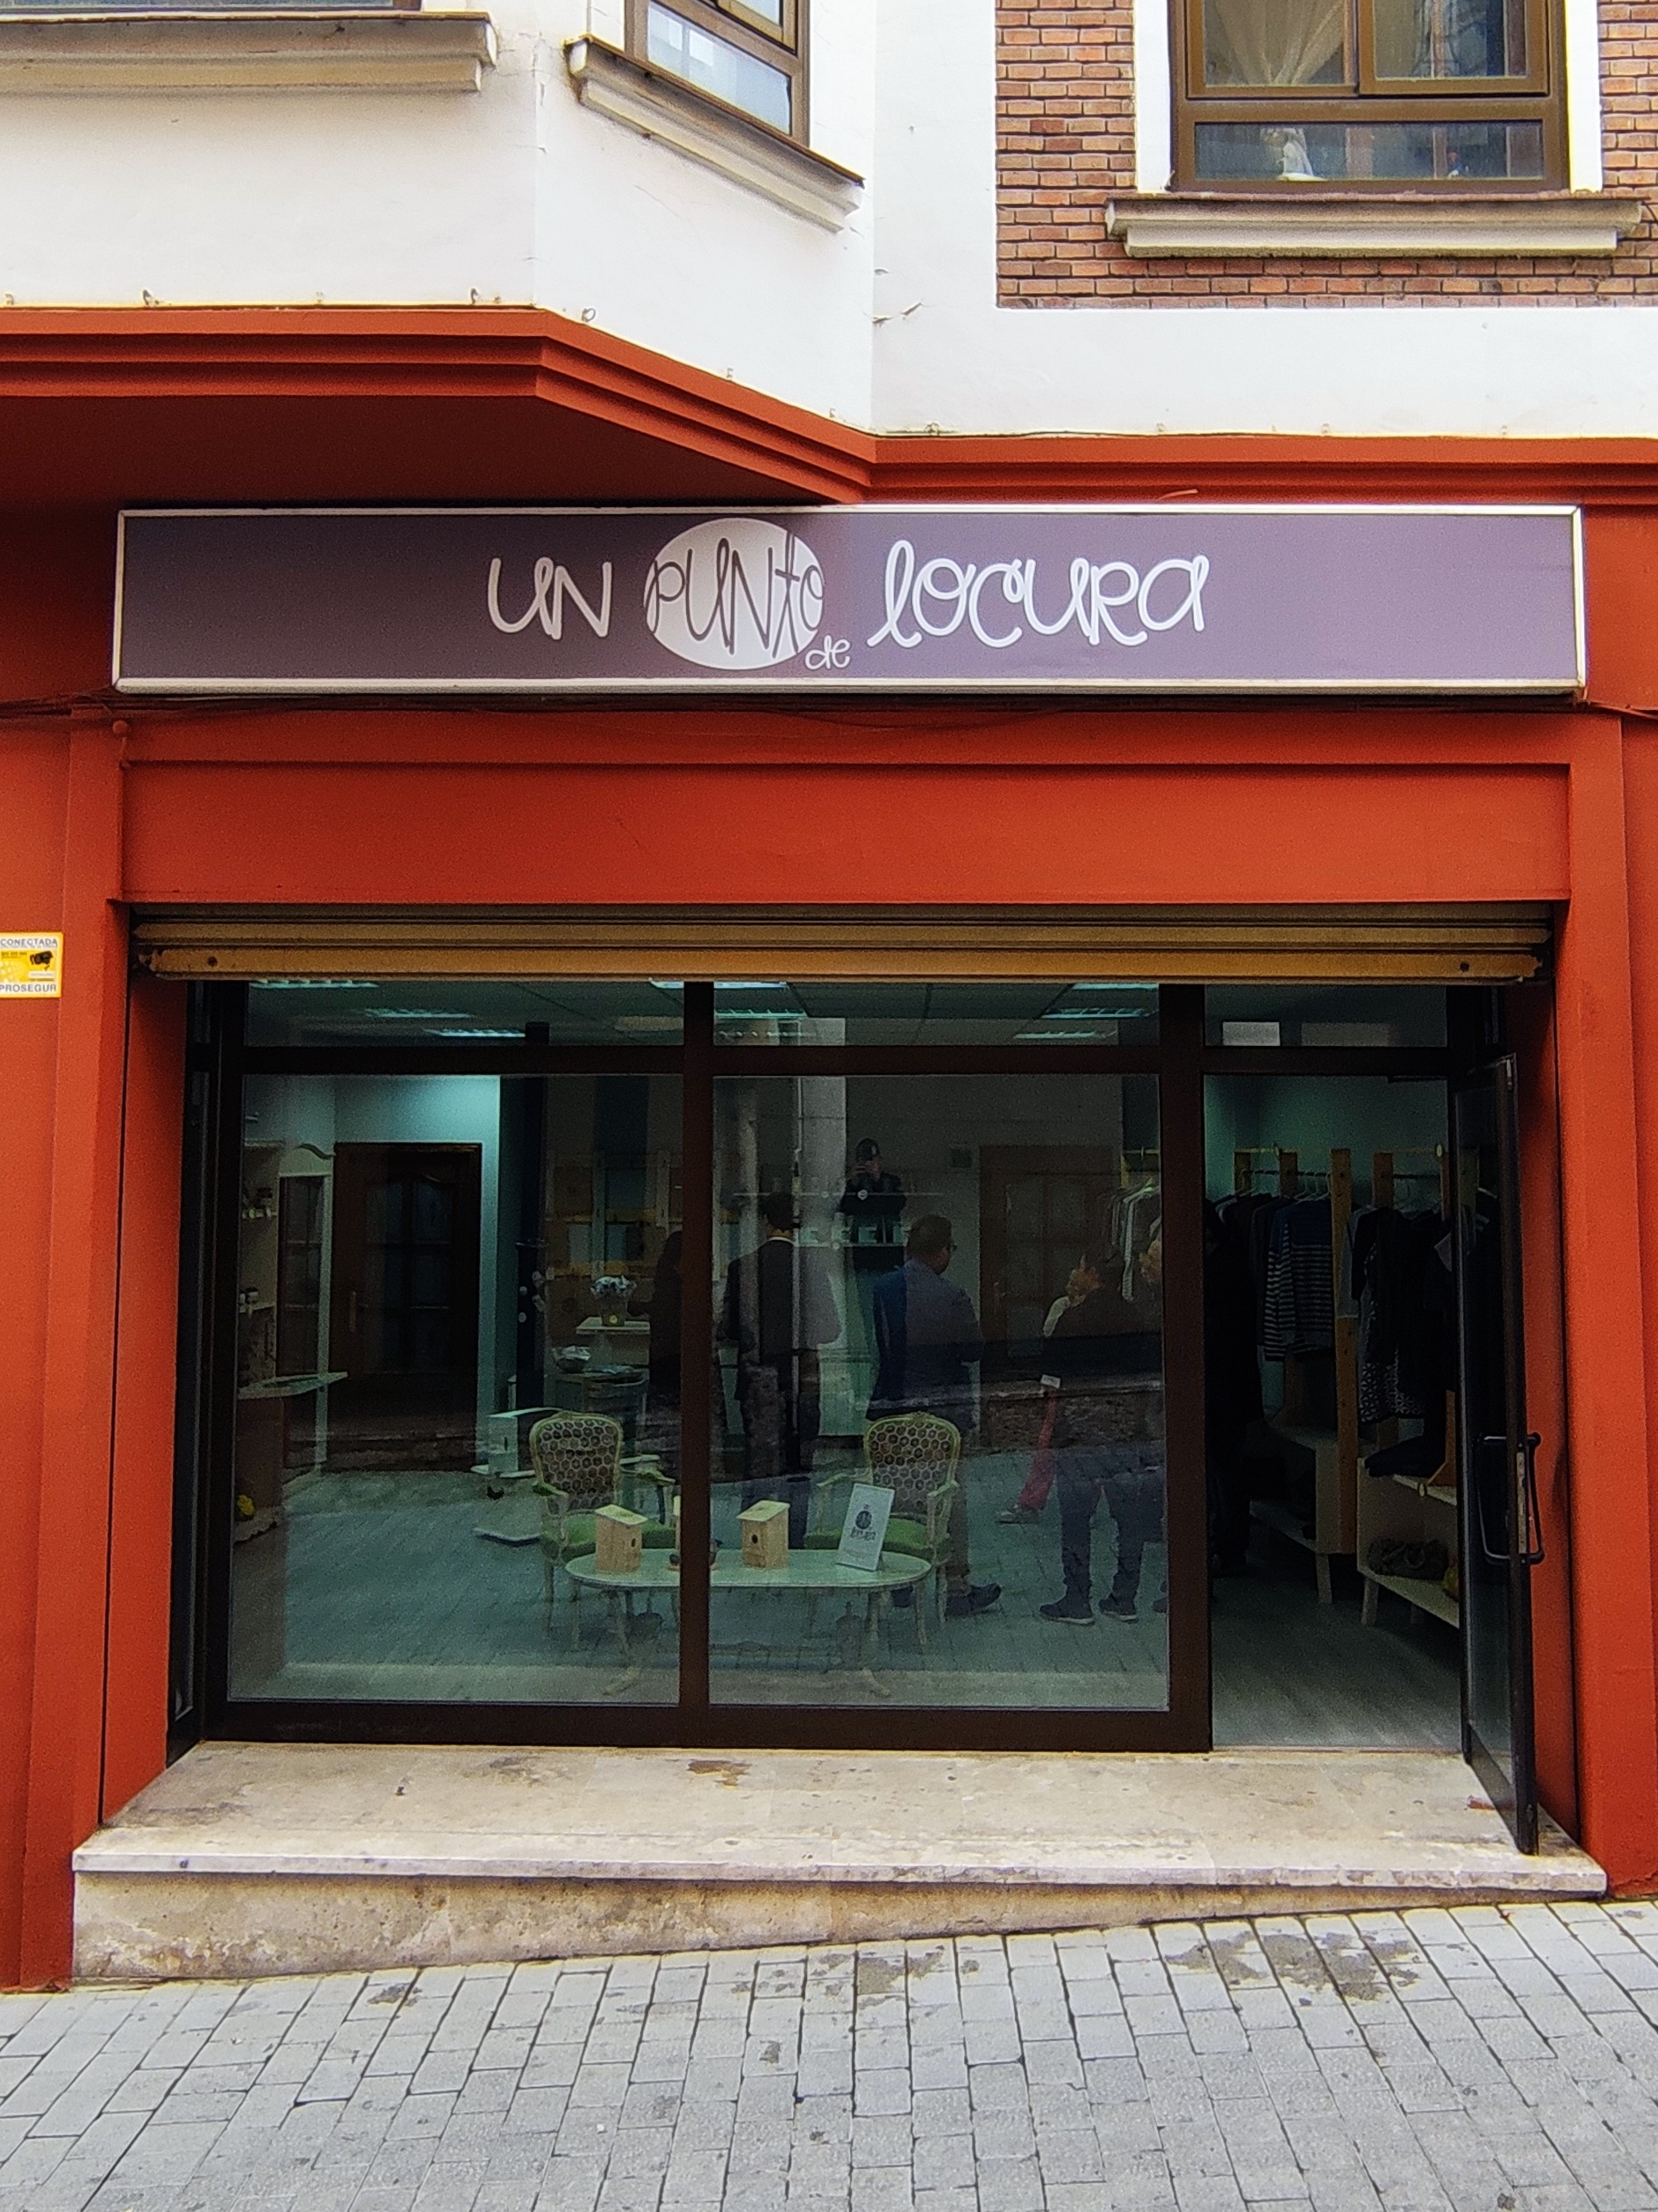 Las tiendas de INTRAS 'Un punto de locura' llegan a Peñafiel (Valladolid) |  Fundación Intras